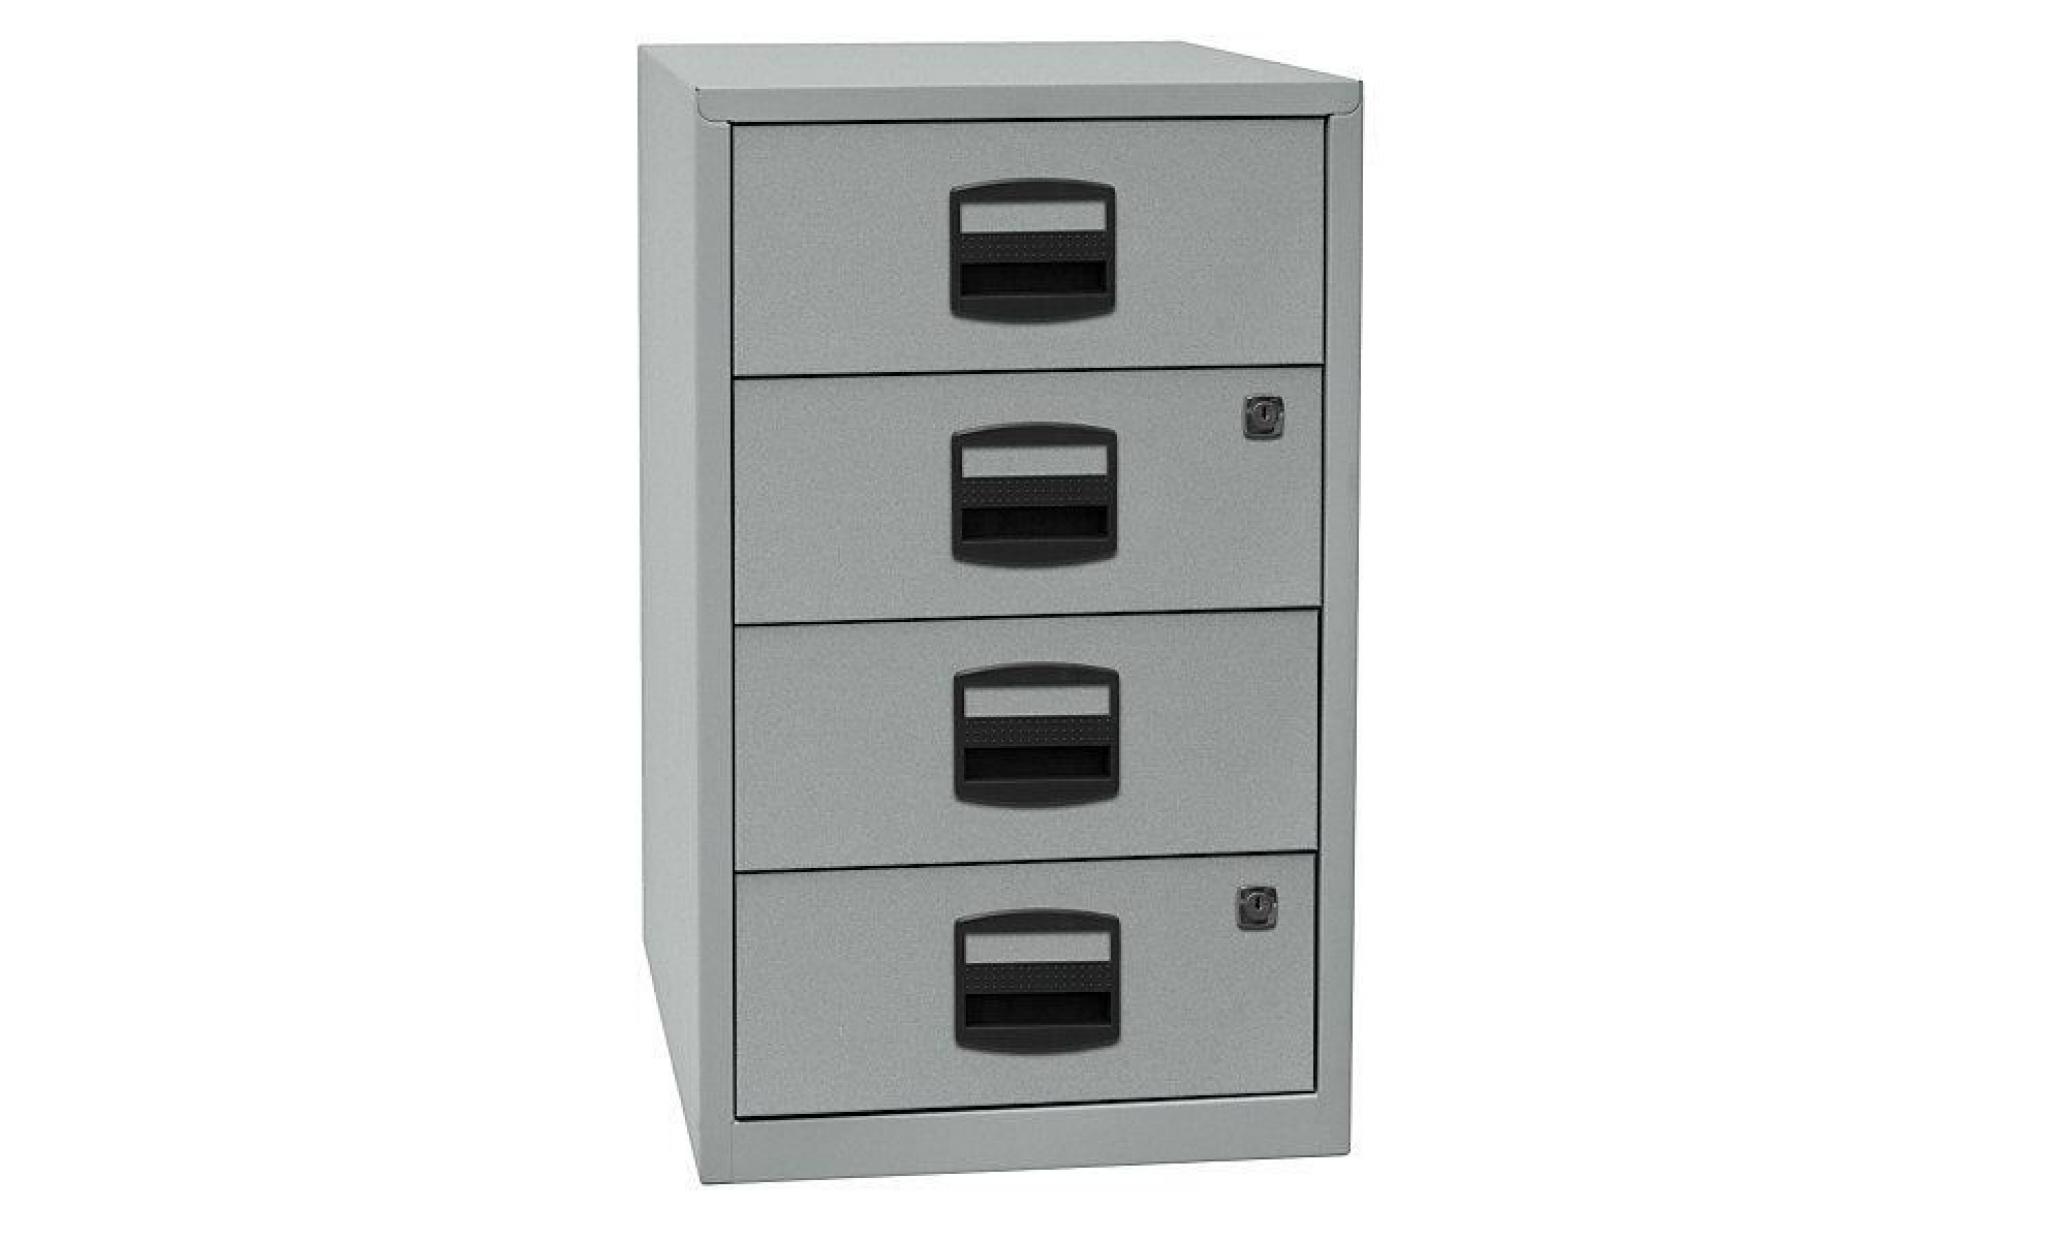 armoire hauteur bureau pfa   4 tiroirs universels argent   armoire basse armoire de bureau armoire à tiroirs armoires basses